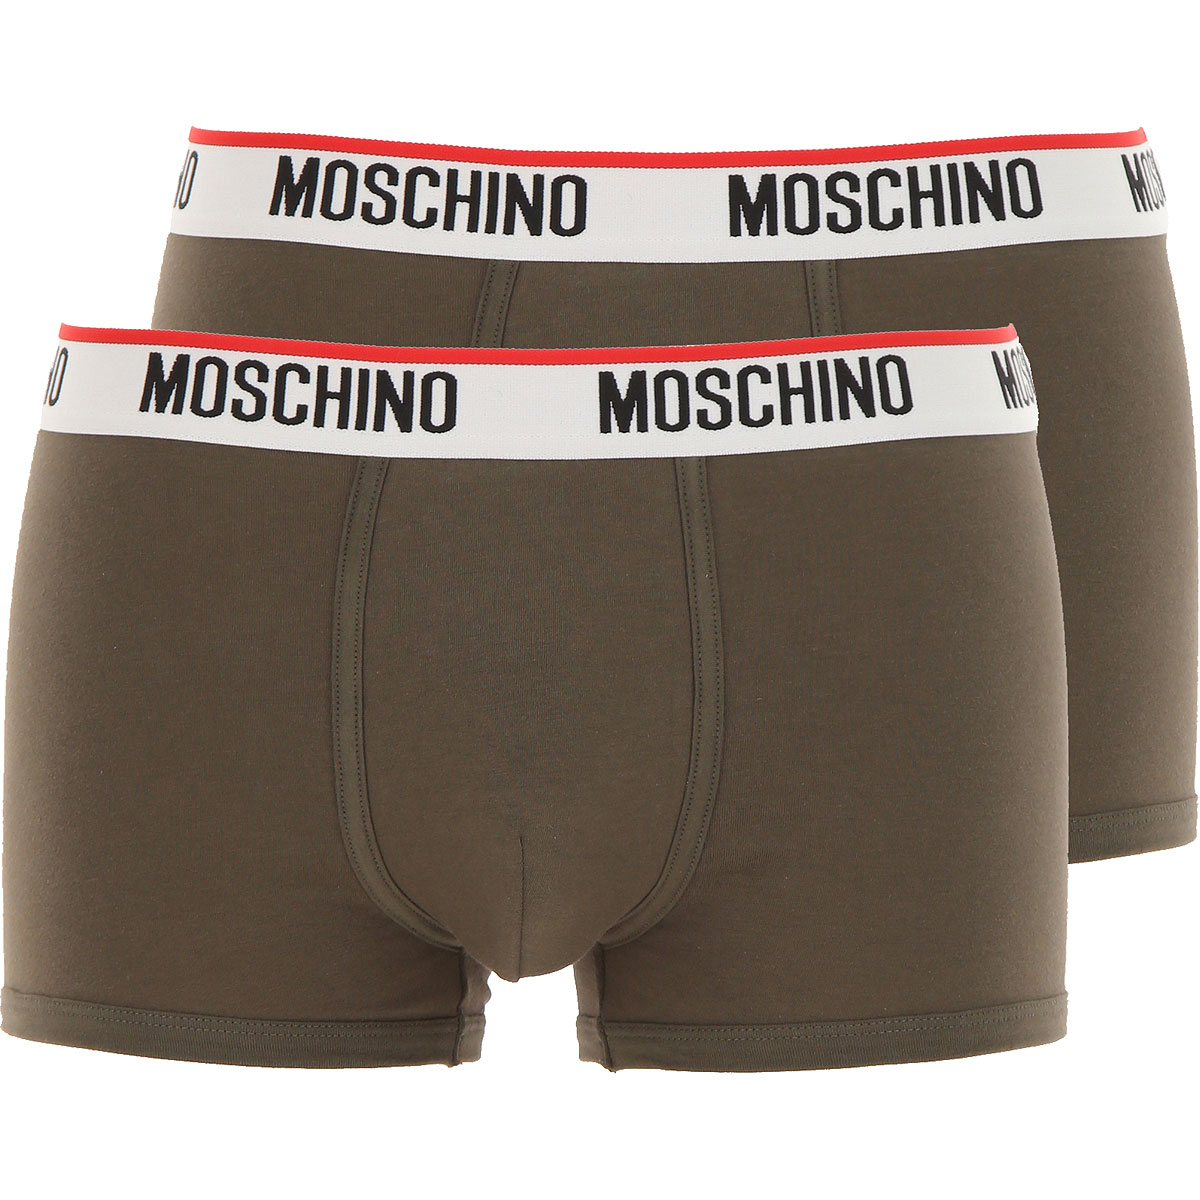 Moschino Boxer Shorts für Herren, Unterhose, Short, Boxer Günstig im Sale, 2 Pack, Dunkel Olivengrün, Baumwolle, 2017, S XS